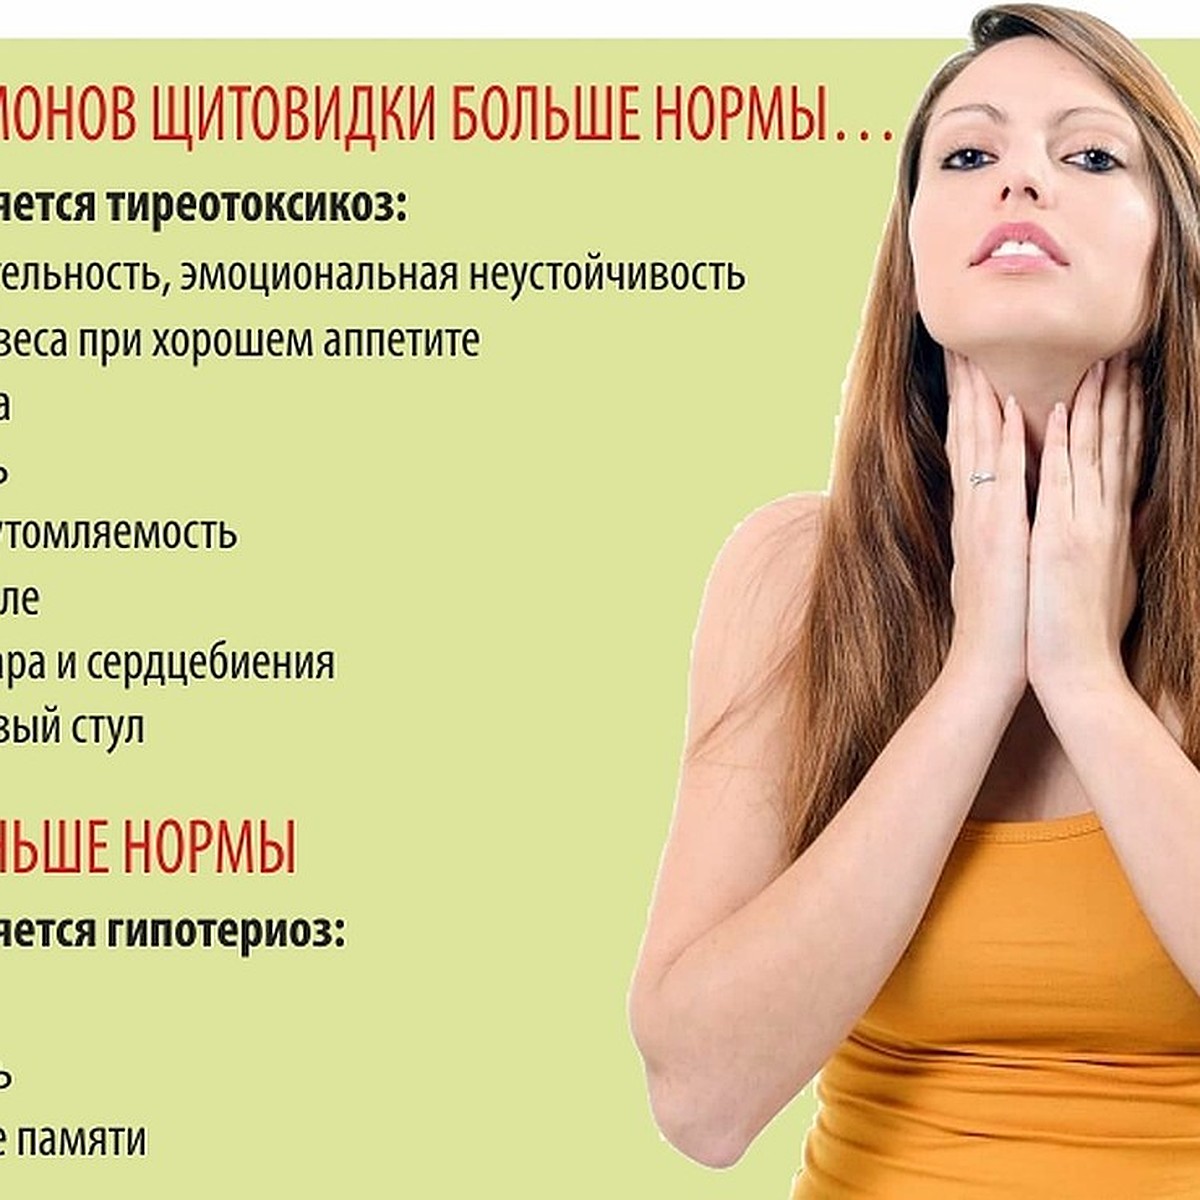 20 признаков того, что ваша щитовидка работает неправильно. Часть 1 - KP.RU